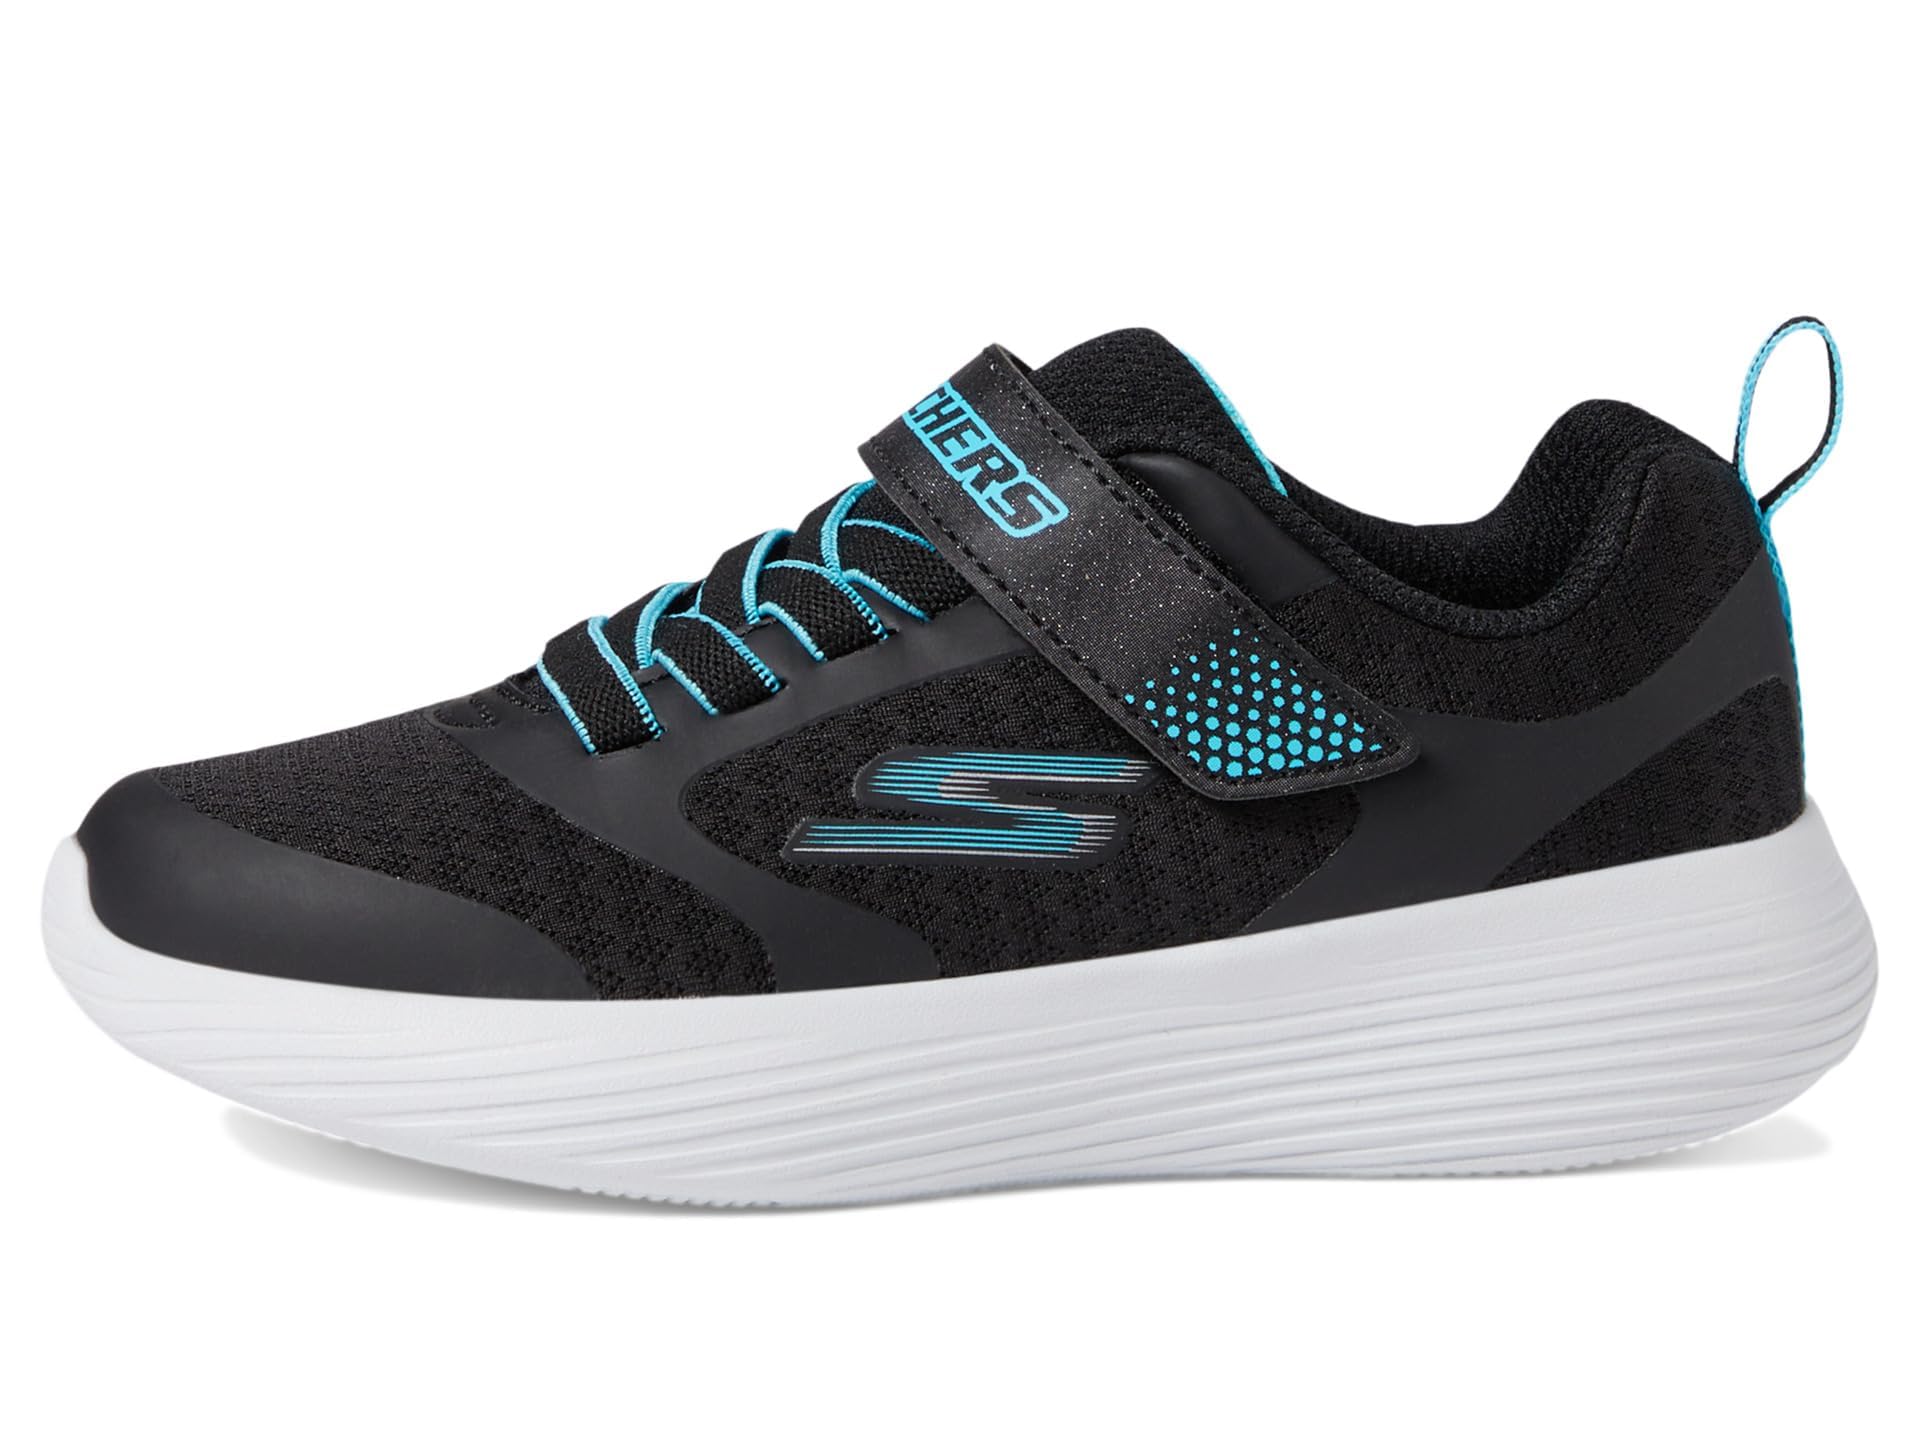 Skechers Unisex-Child Go Run 400 V2 Sneaker